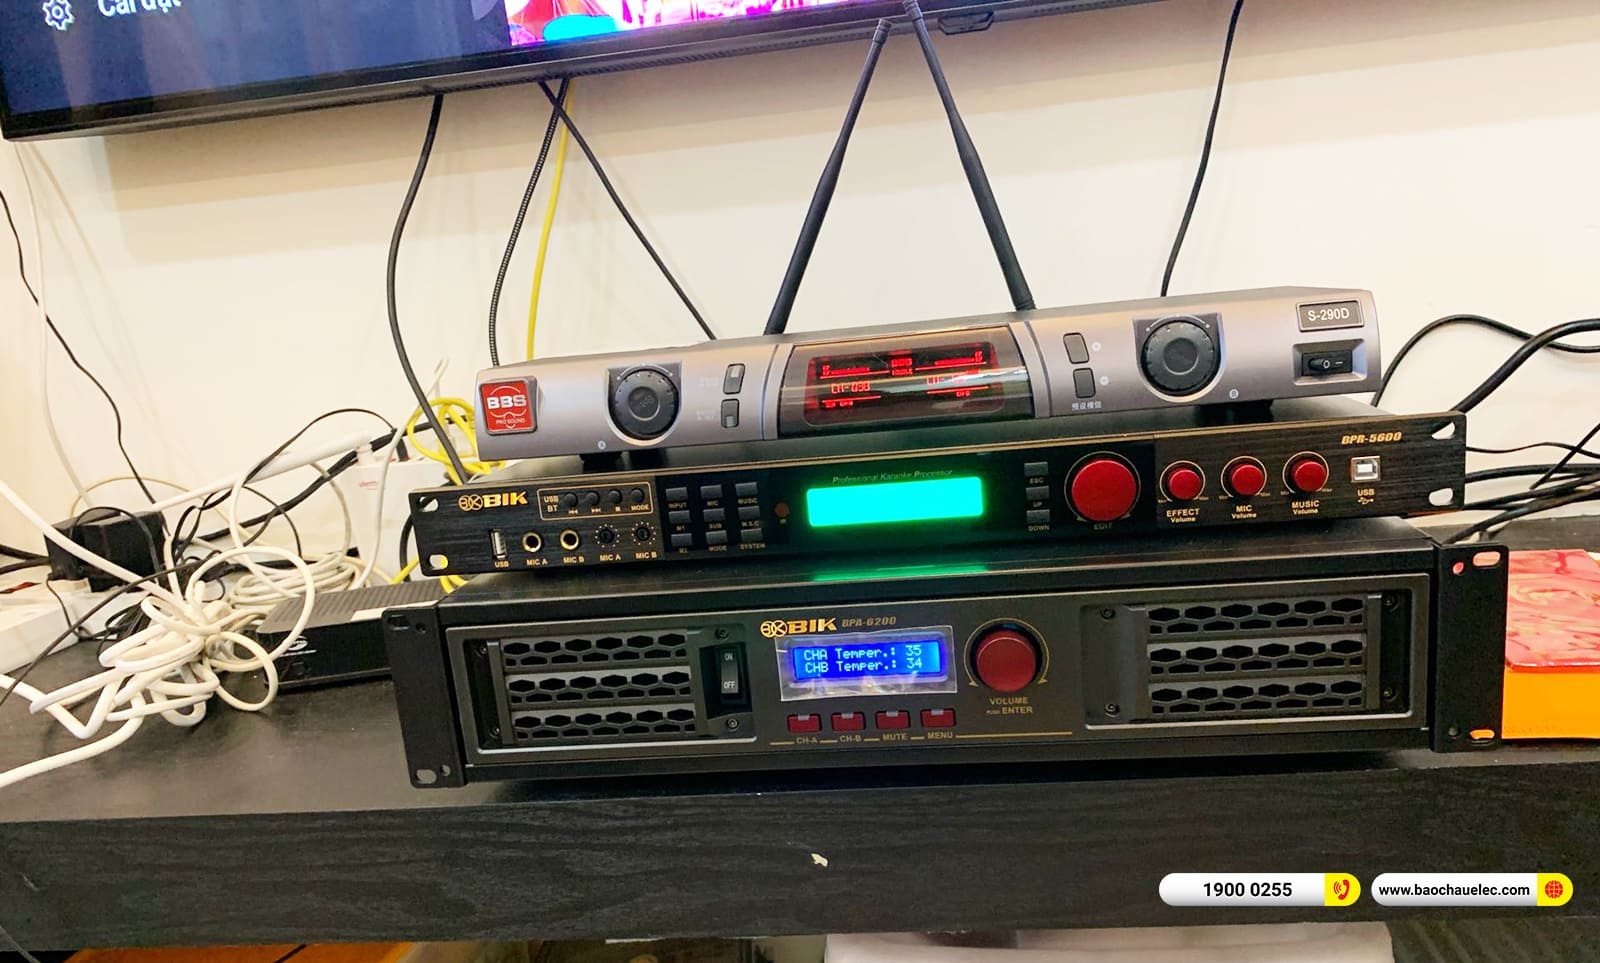  Lắp đặt dàn karaoke BMB hơn 55tr cho anh Quyền ở TPHCM 